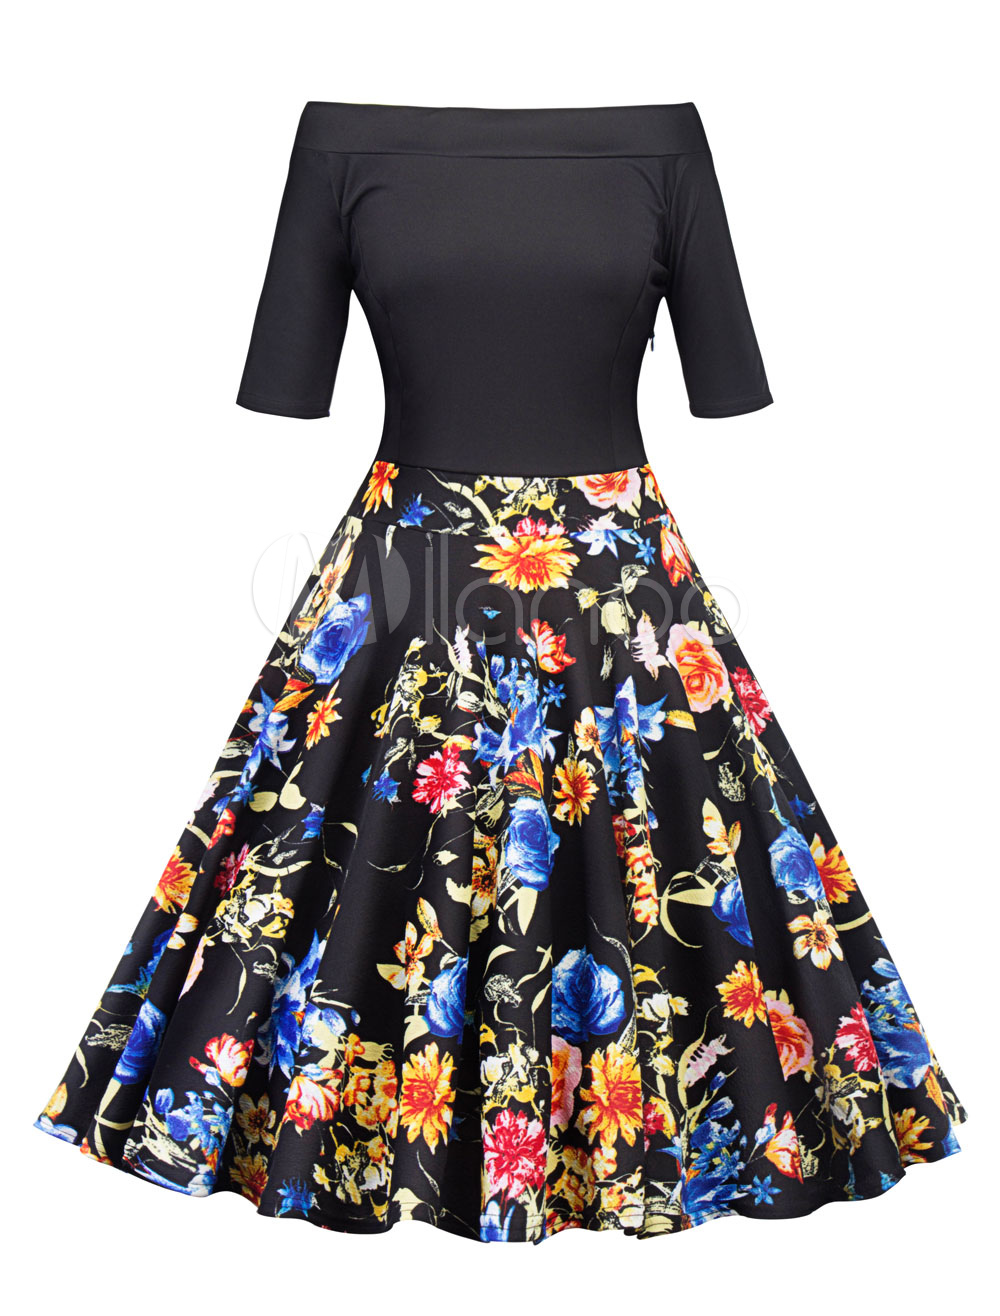 Black Vintage Dress 1950s Off The Shoulder Floral Print Short Sleeve ...